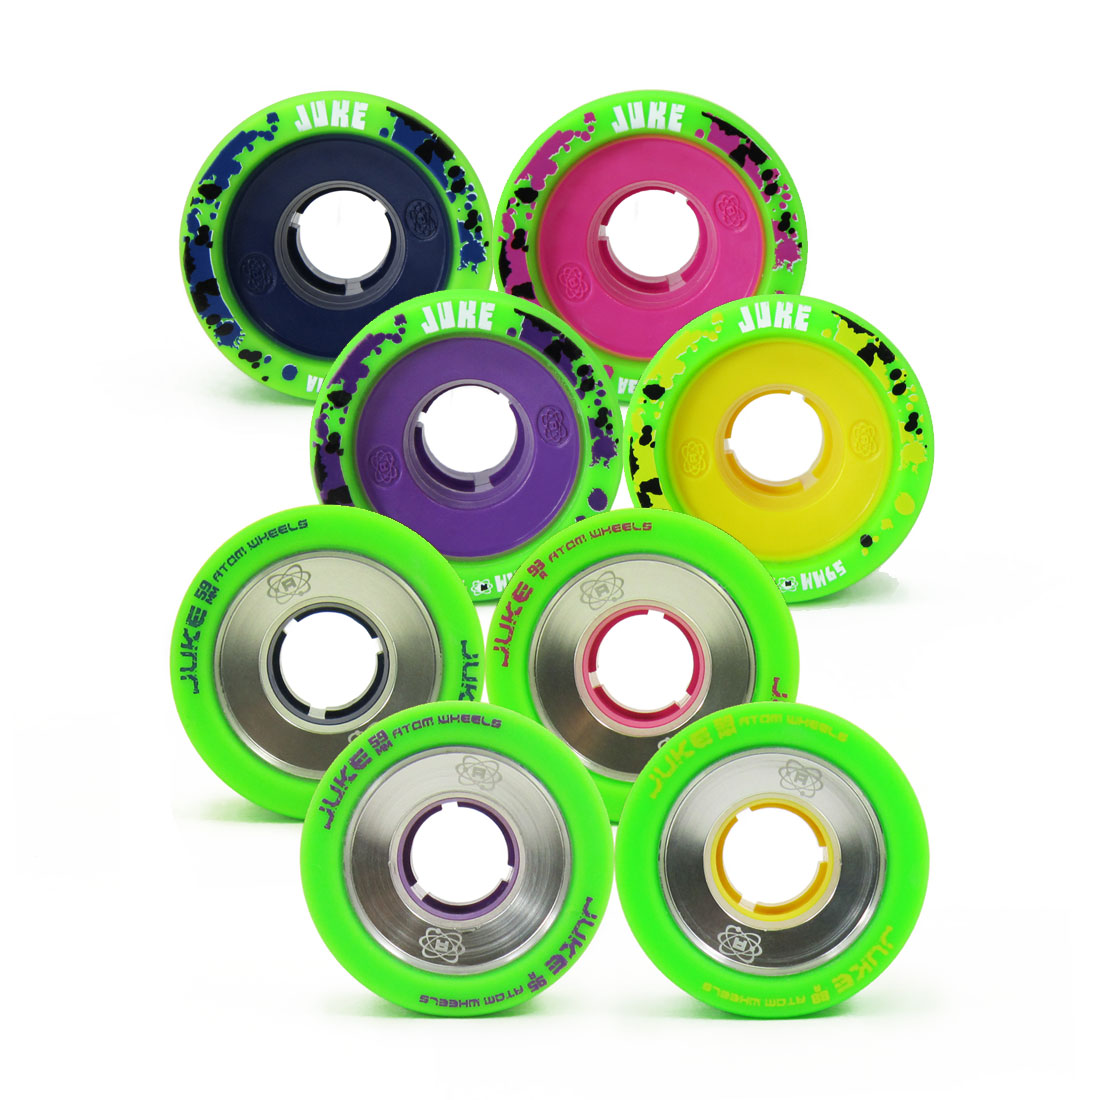 New Atom Juke Aluminum Hub Derby Skate Wheels 59mm x 38mm Full Set of 8 